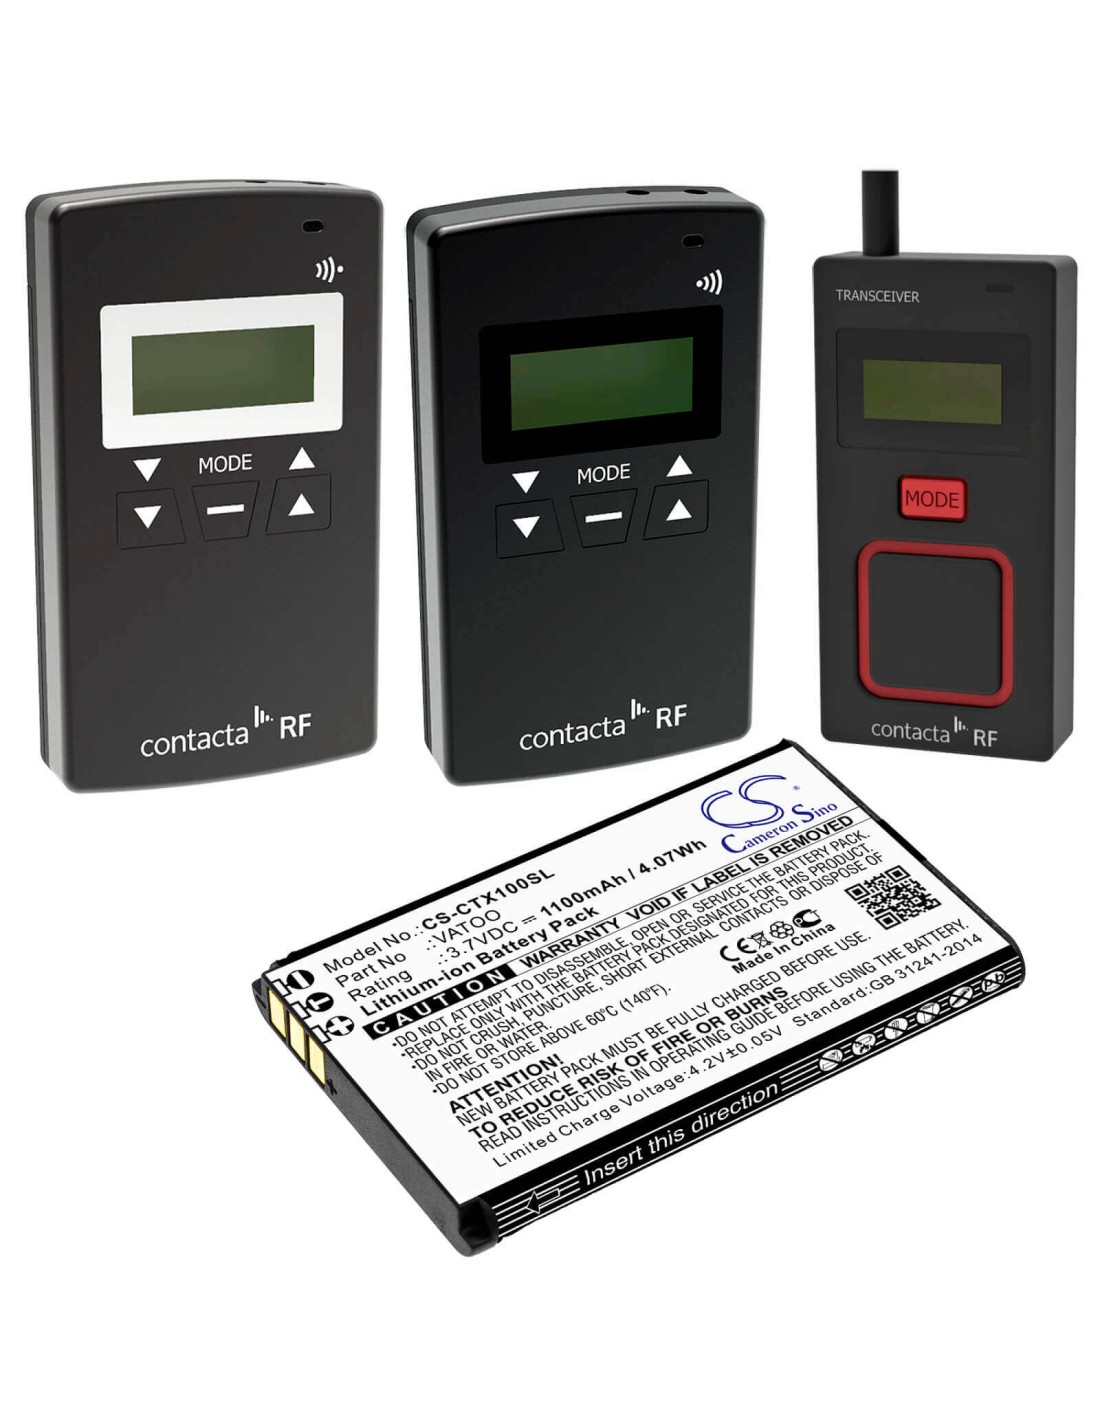 Battery for Contacta, Rf-rx1, Rf-trx, Rf-tx1 3.7V, 1100mAh - 4.07Wh